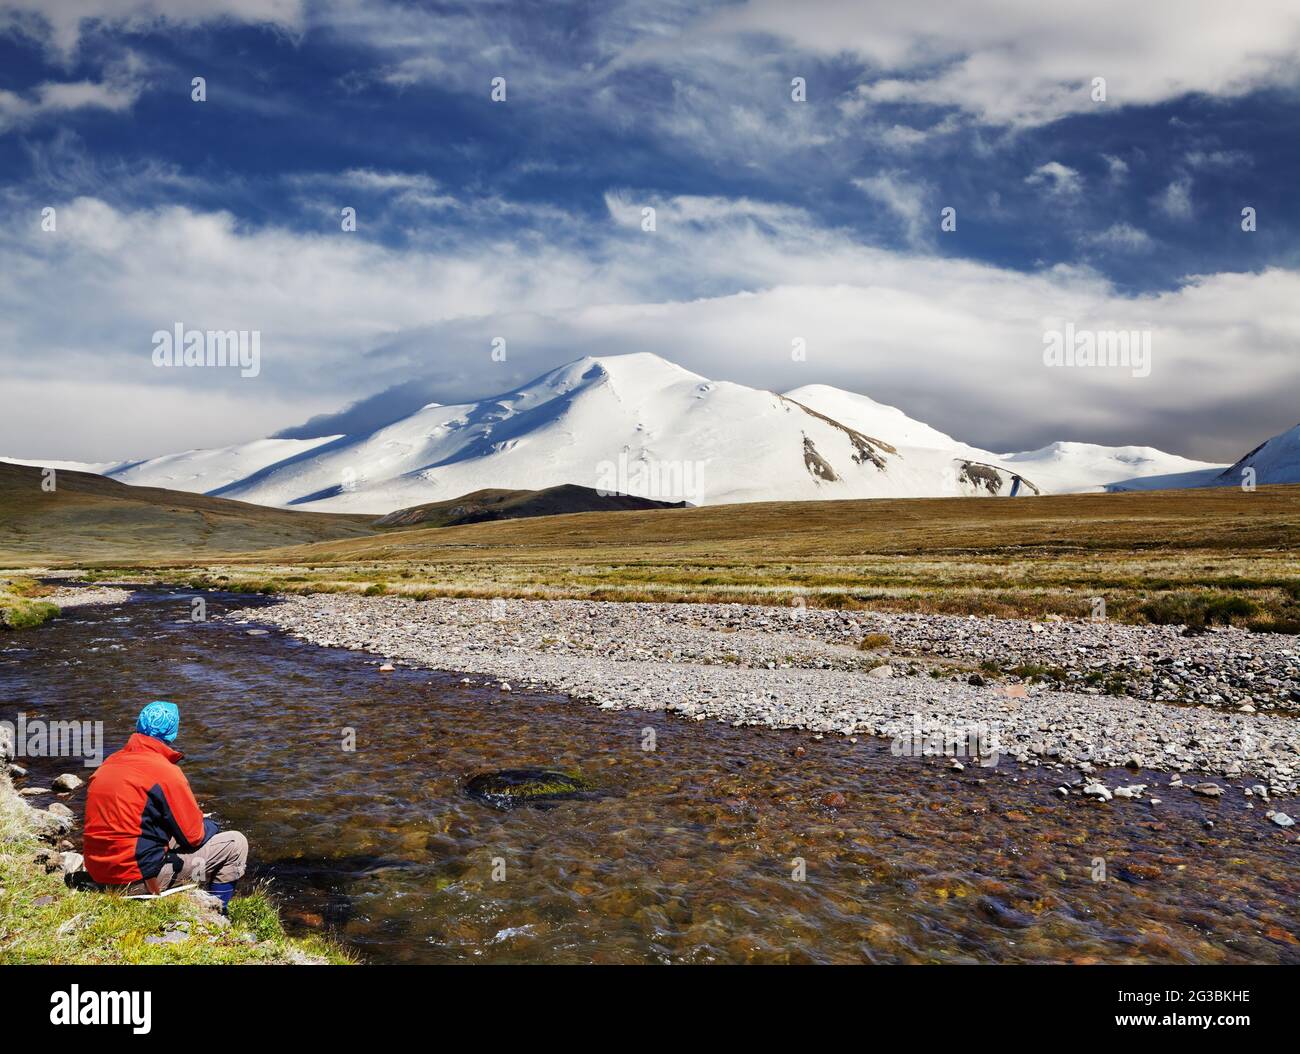 Homme assis seul sur la rive de la rivière contre la neige montagne et ciel bleu fond, concept de voyage Banque D'Images